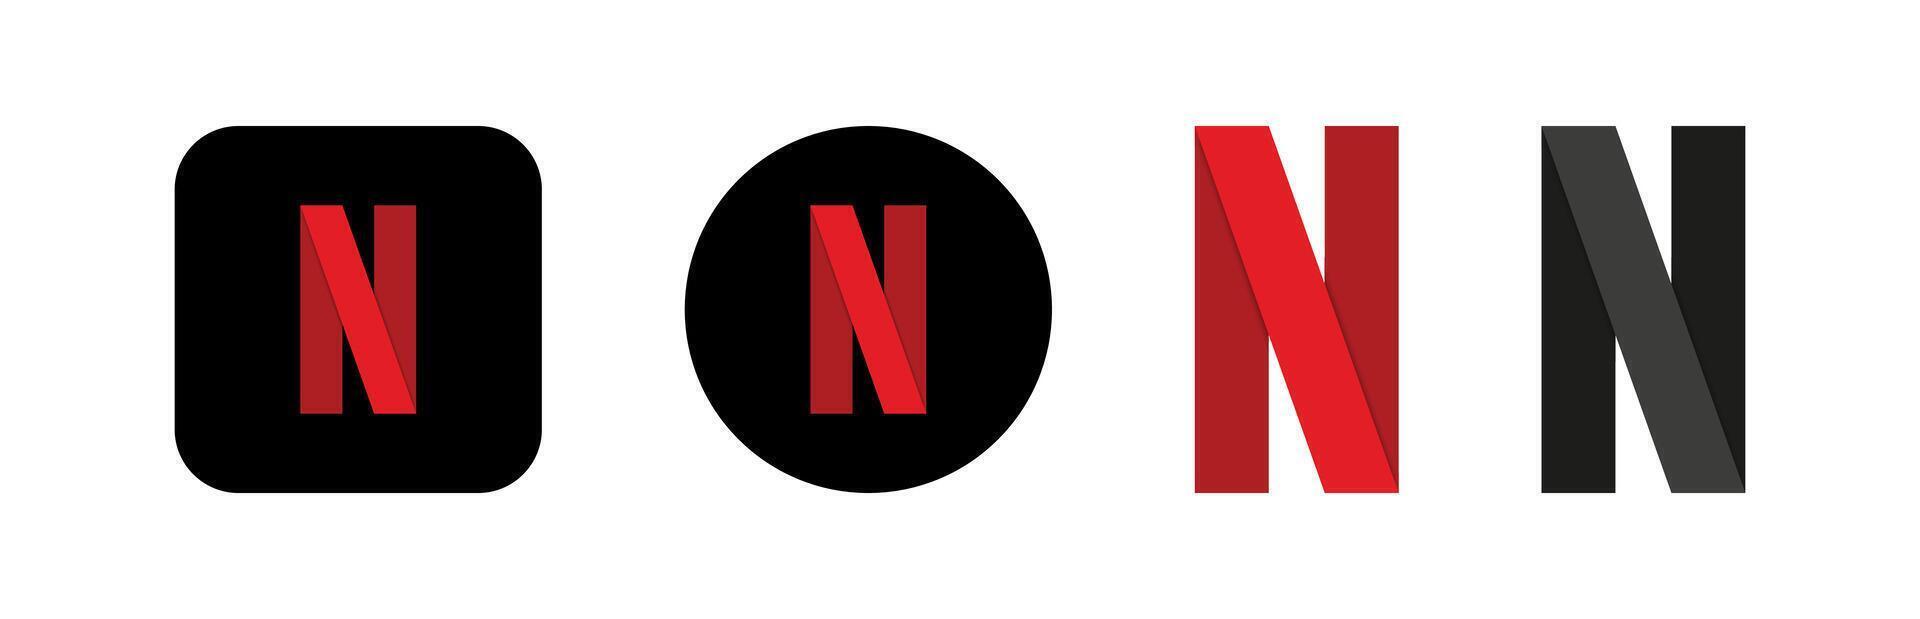 cirkel Netflix logotype icoon. streaming platform. film, bioscoop, serieel plaats. sociaal media app. netwerk sollicitatie. populair redactioneel merk. vector illustratie.